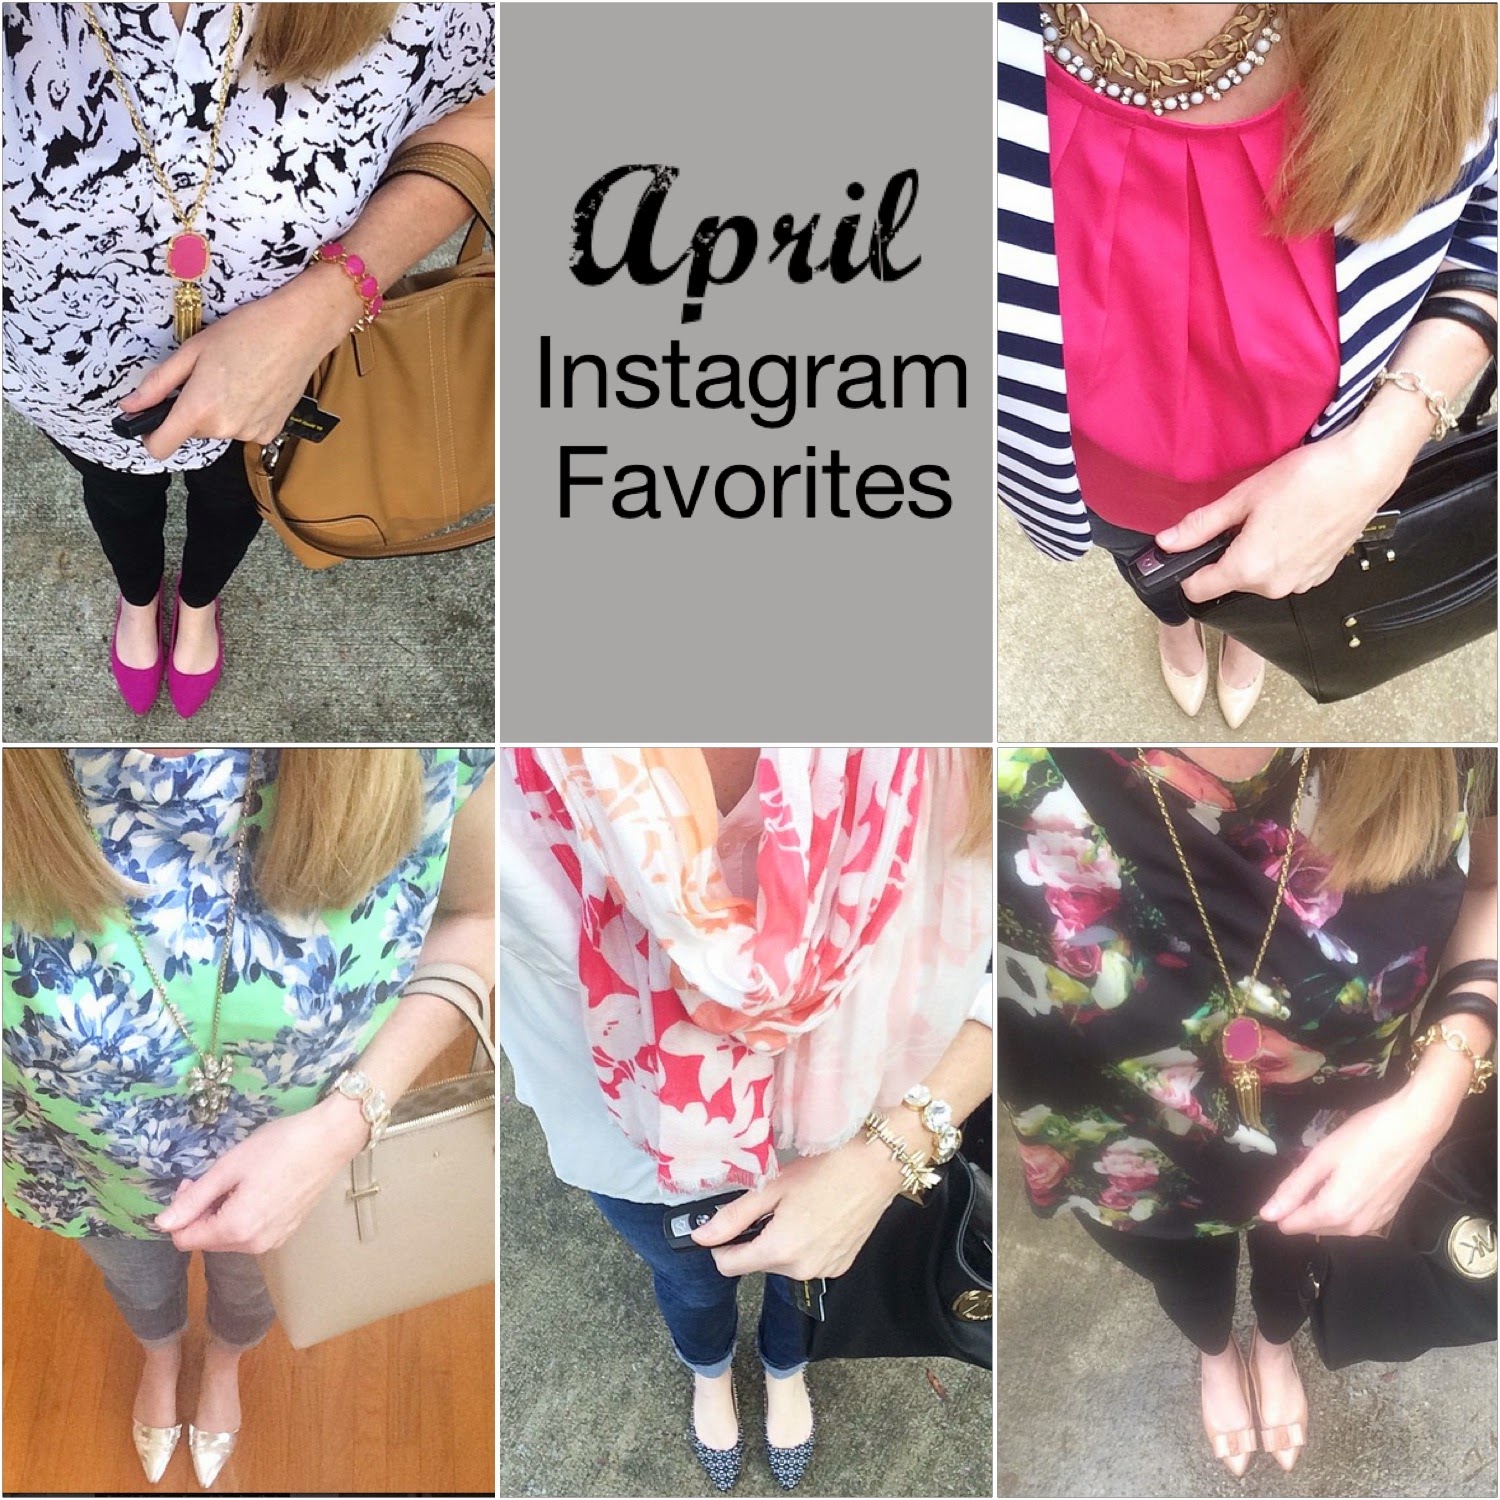 Trendy Wednesday Link Up #21: April Instagram Favorites